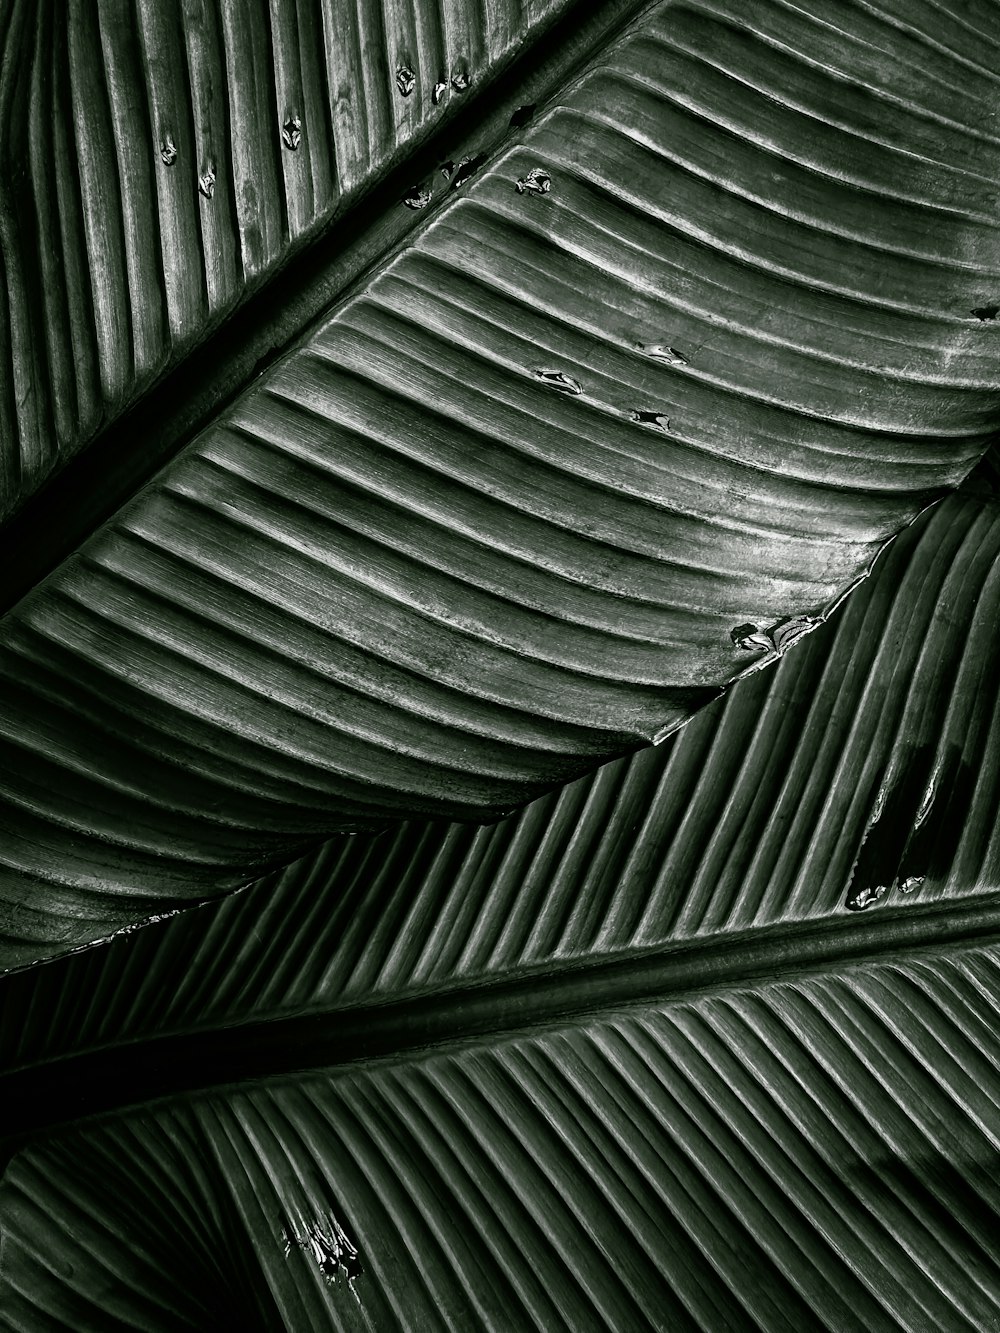 바나나 잎의 흑백 사진